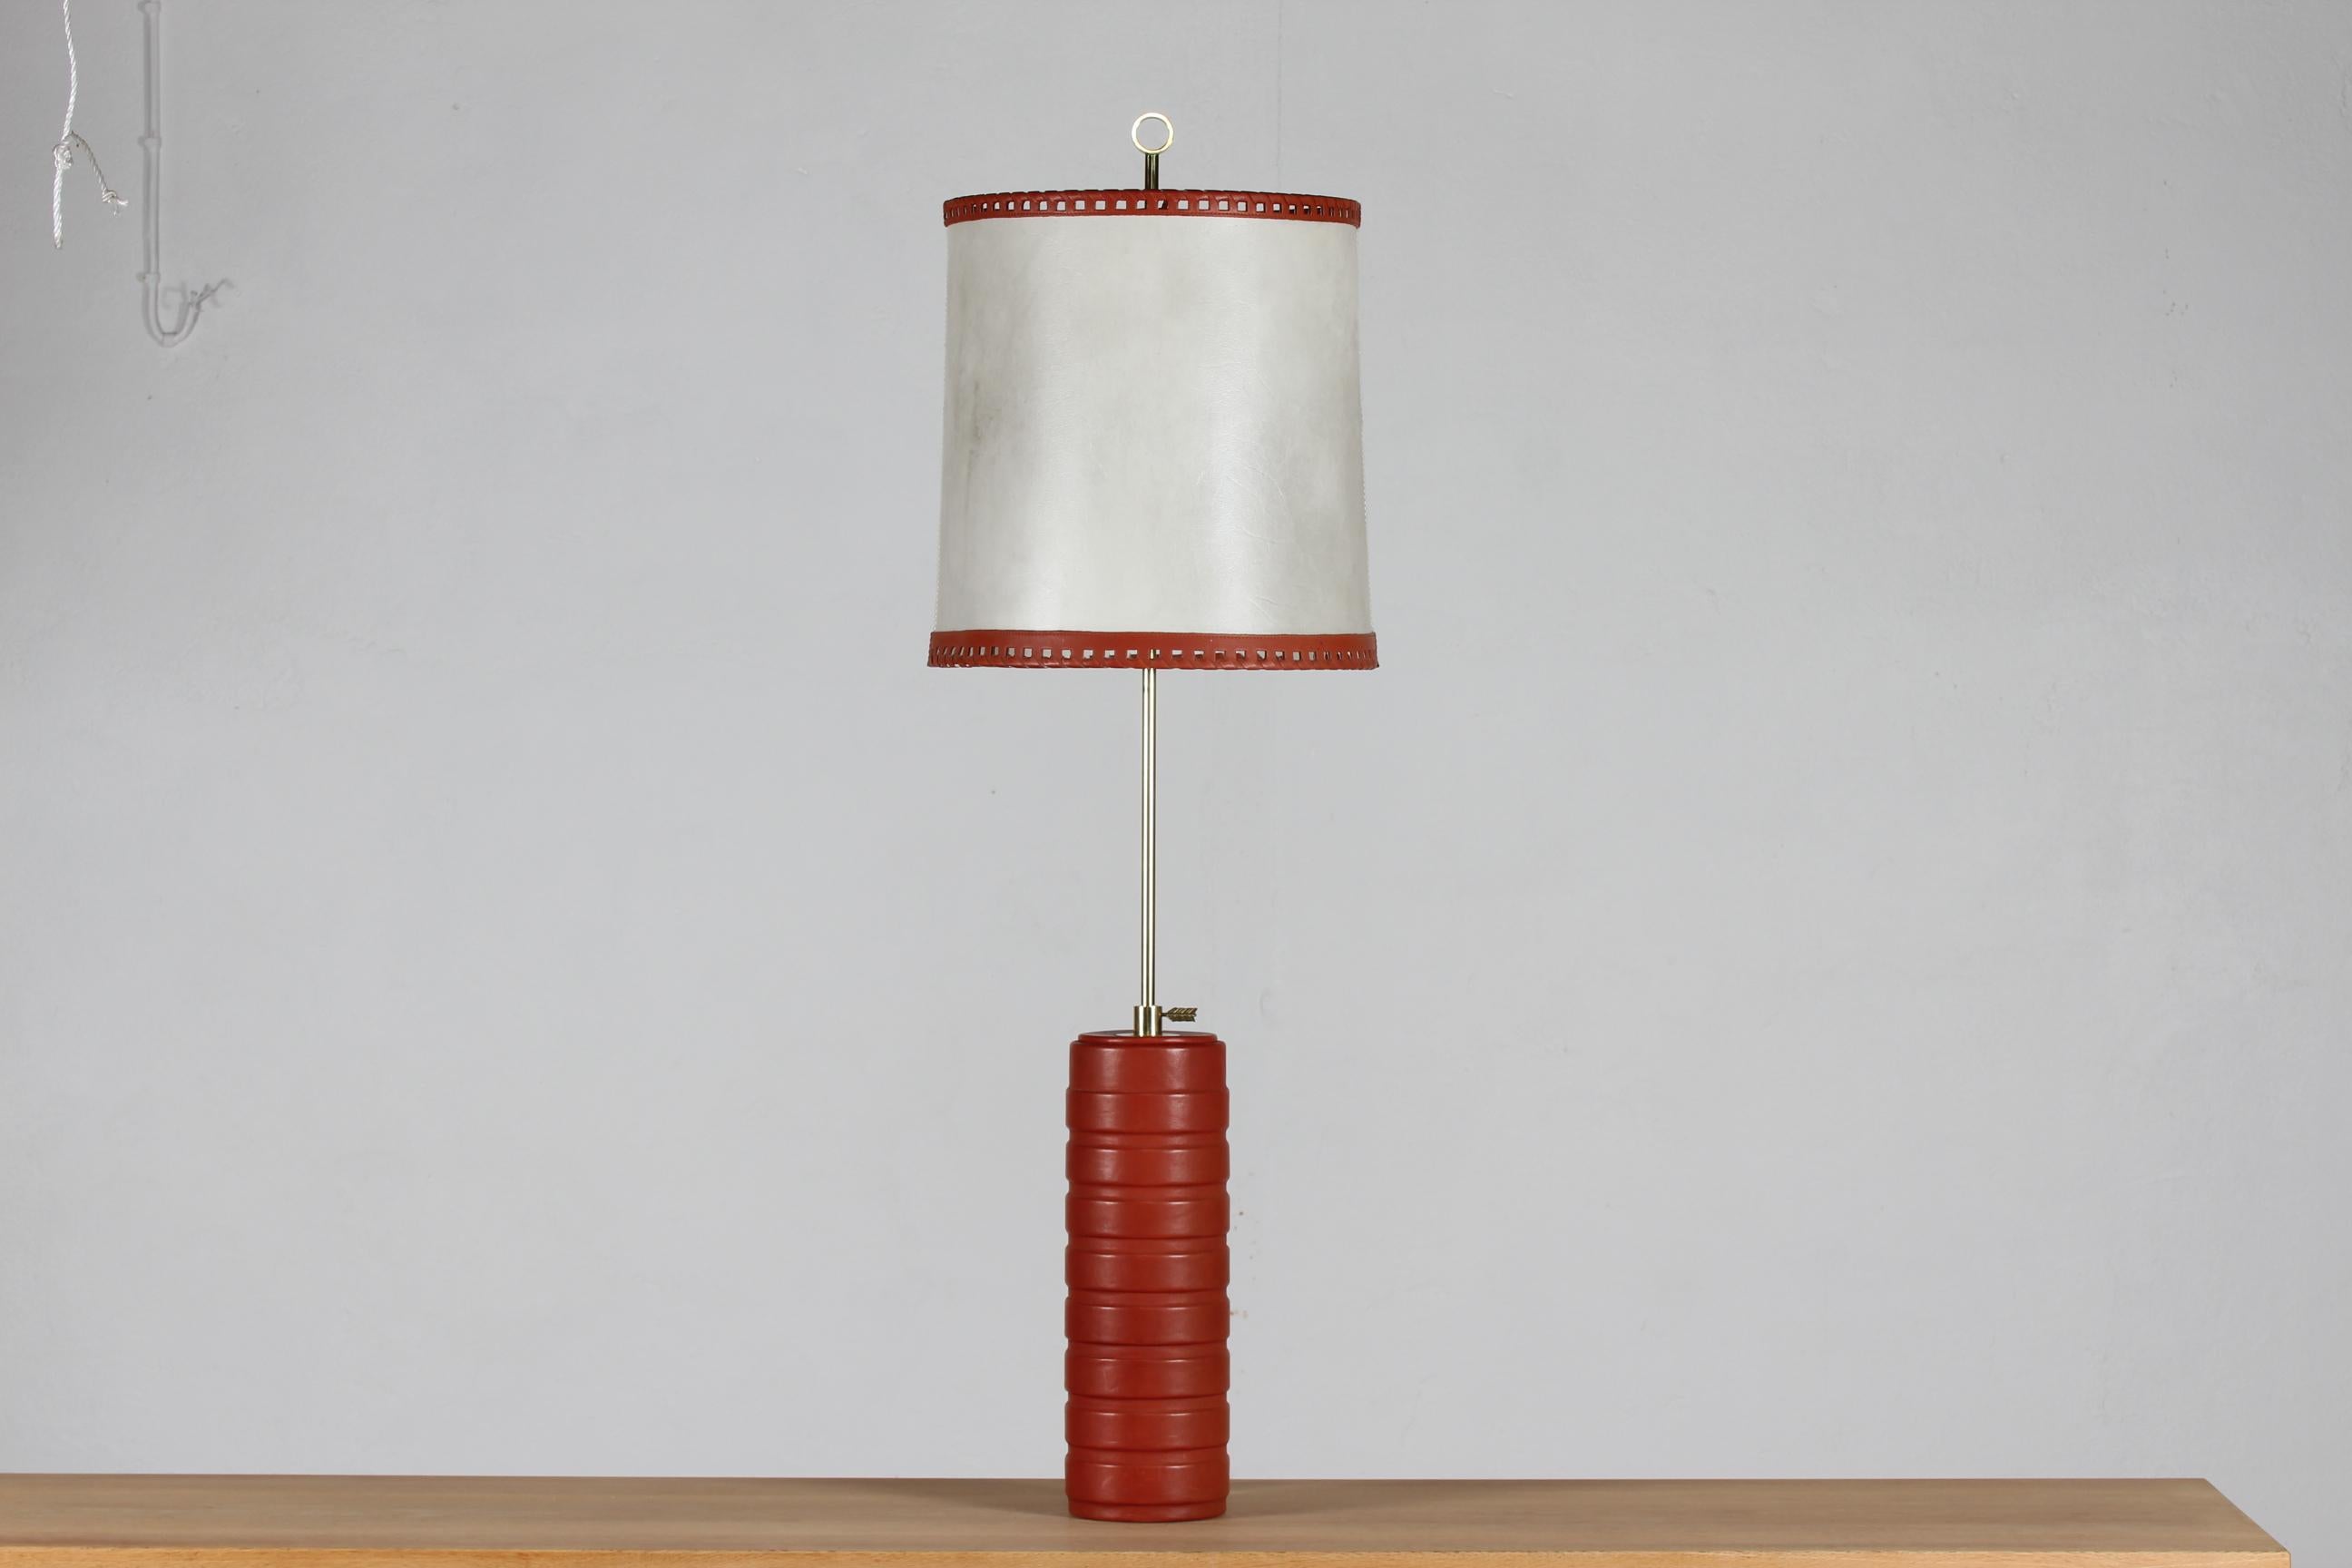 Design de lumière scandinave du milieu du siècle.

Grande lampe de table ou de bureau des années 1960, réglable en hauteur et suffisamment grande pour être utilisée sur le sol
Il est fabriqué en cuir rouge-brun, avec une teinte de cuir blanc